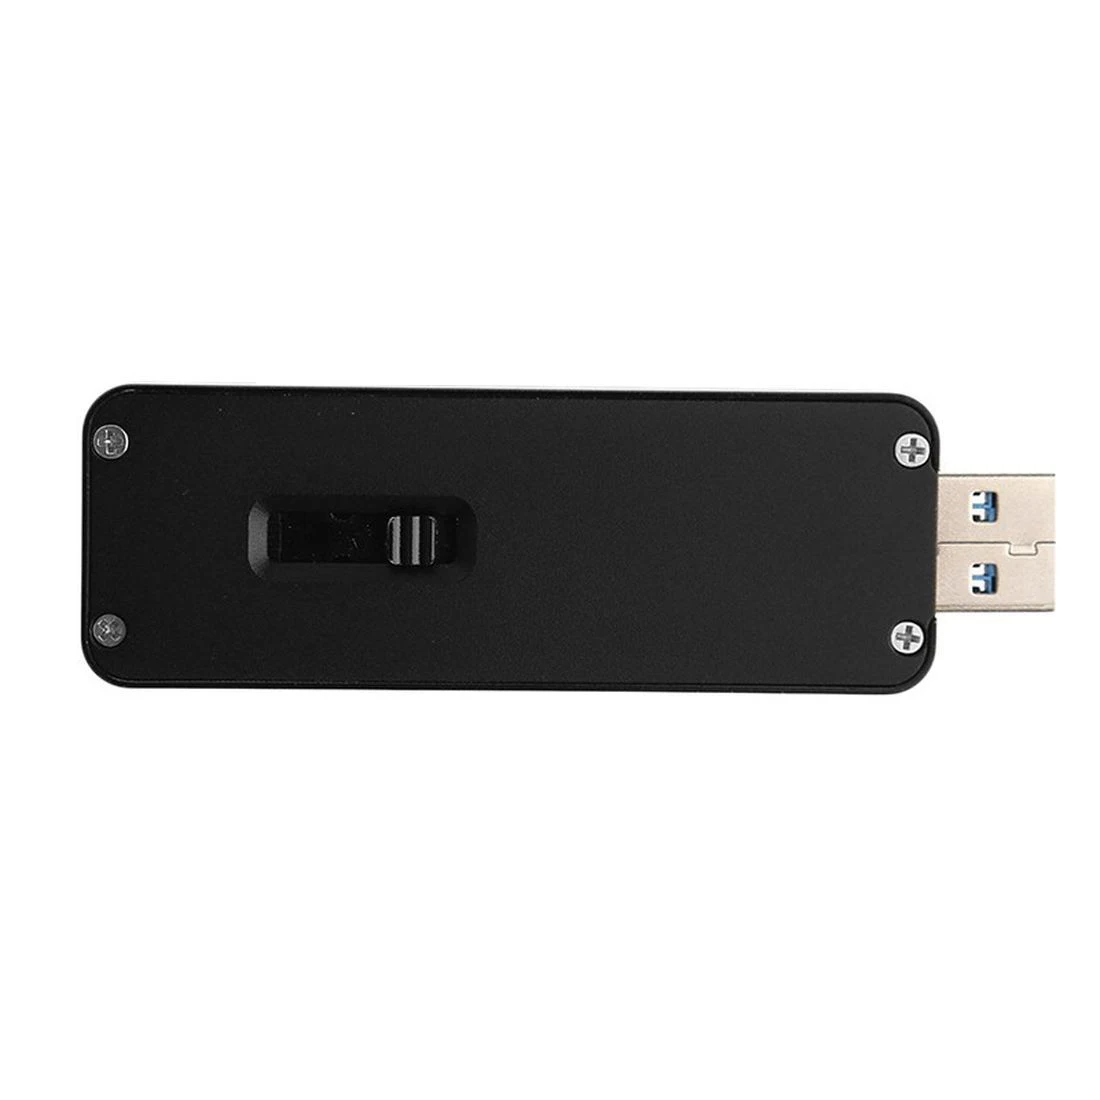 M2 SATA SSD,  USB3.0 Type-A  M.2 SSD,  B Key  NGFF 2230 2242 SATA HDD